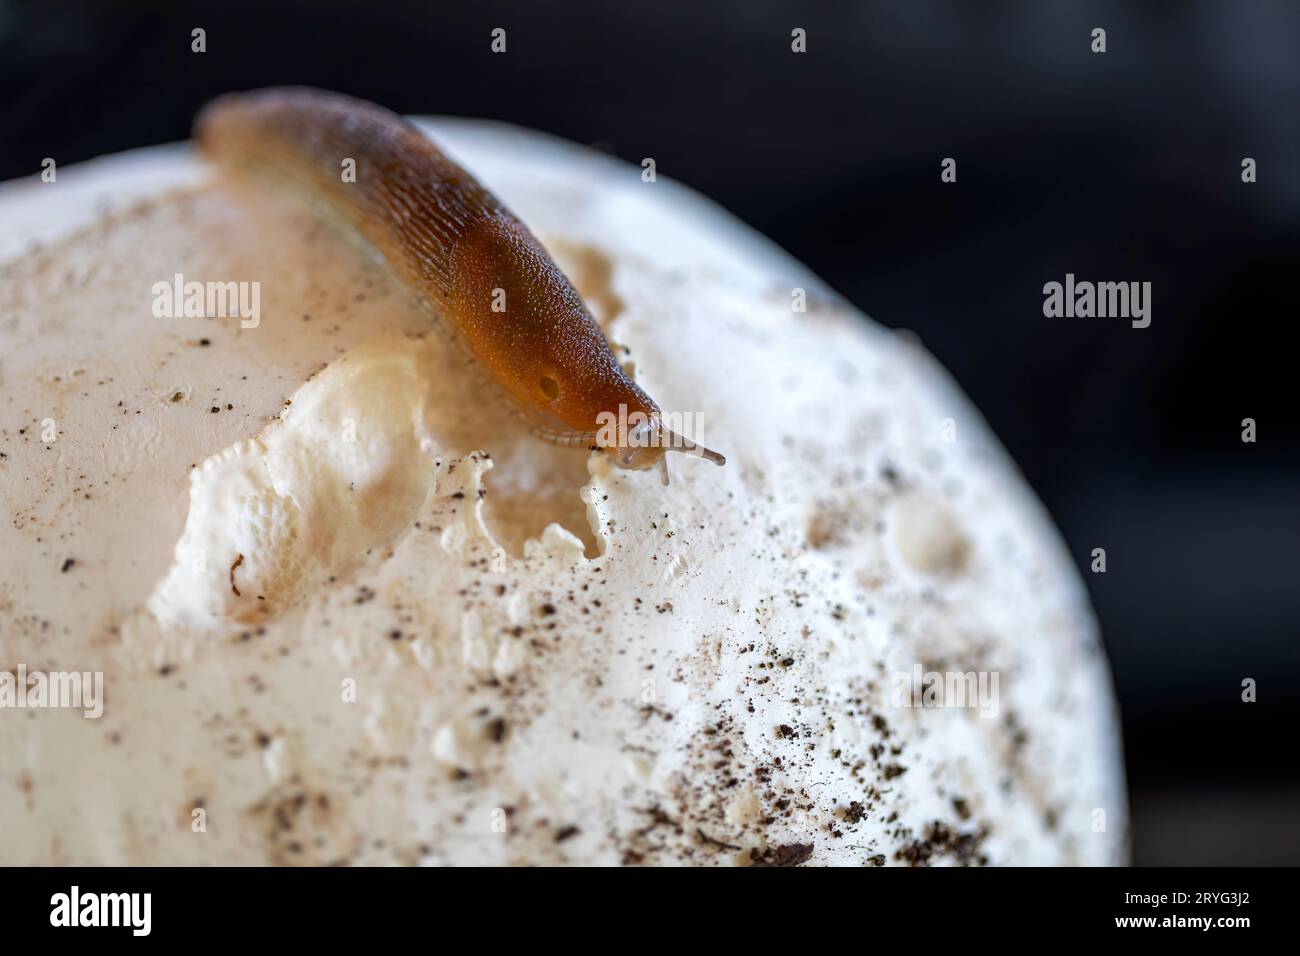 Slug, or land slug. Stock Photo